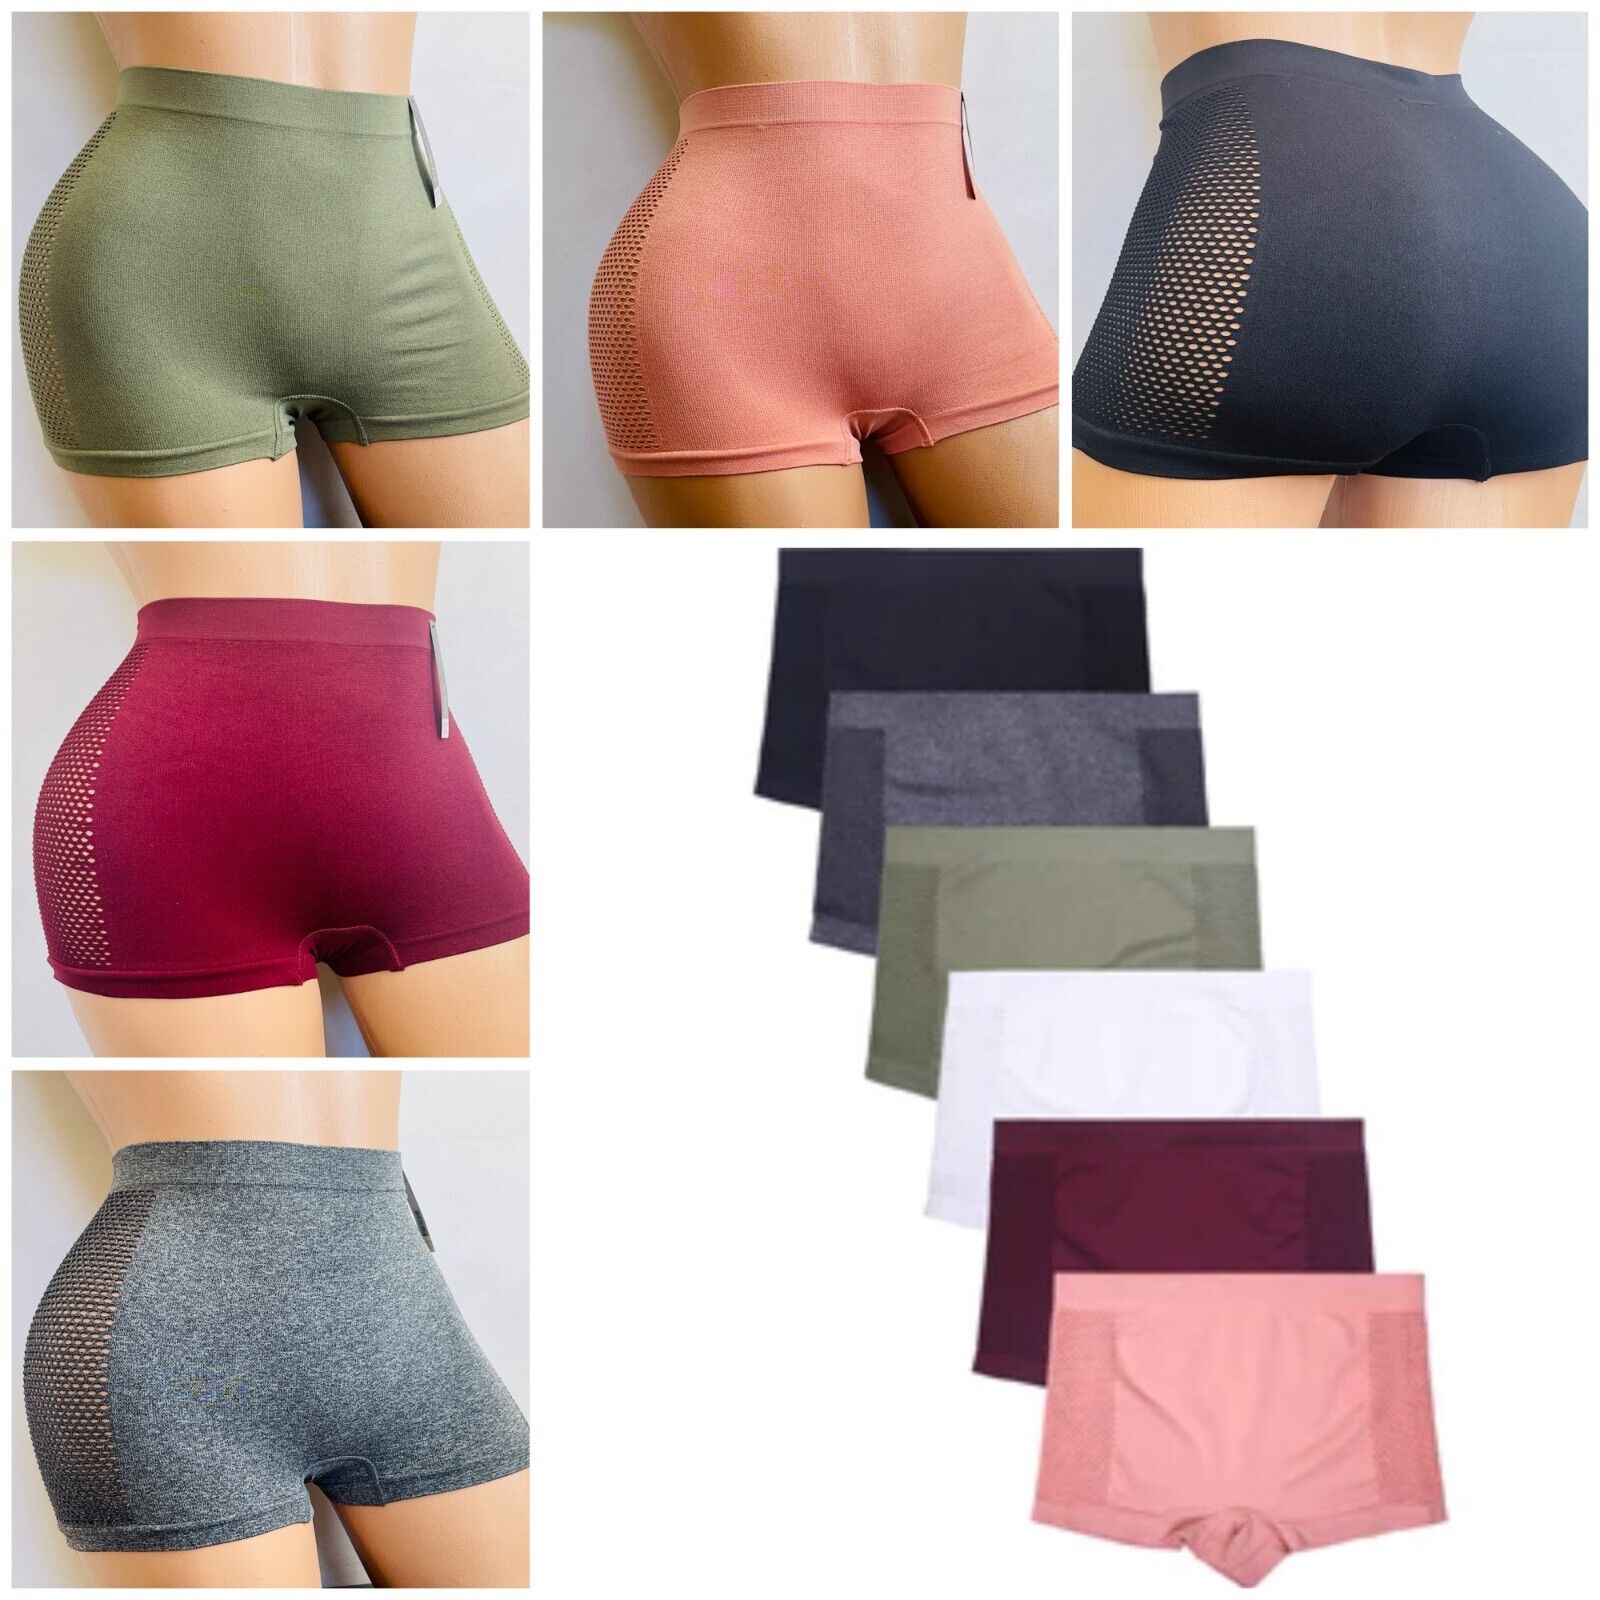 6 Boyshorts sport Active Wear Yoga Seamless Short undies shortie Underwear S-XL EVA